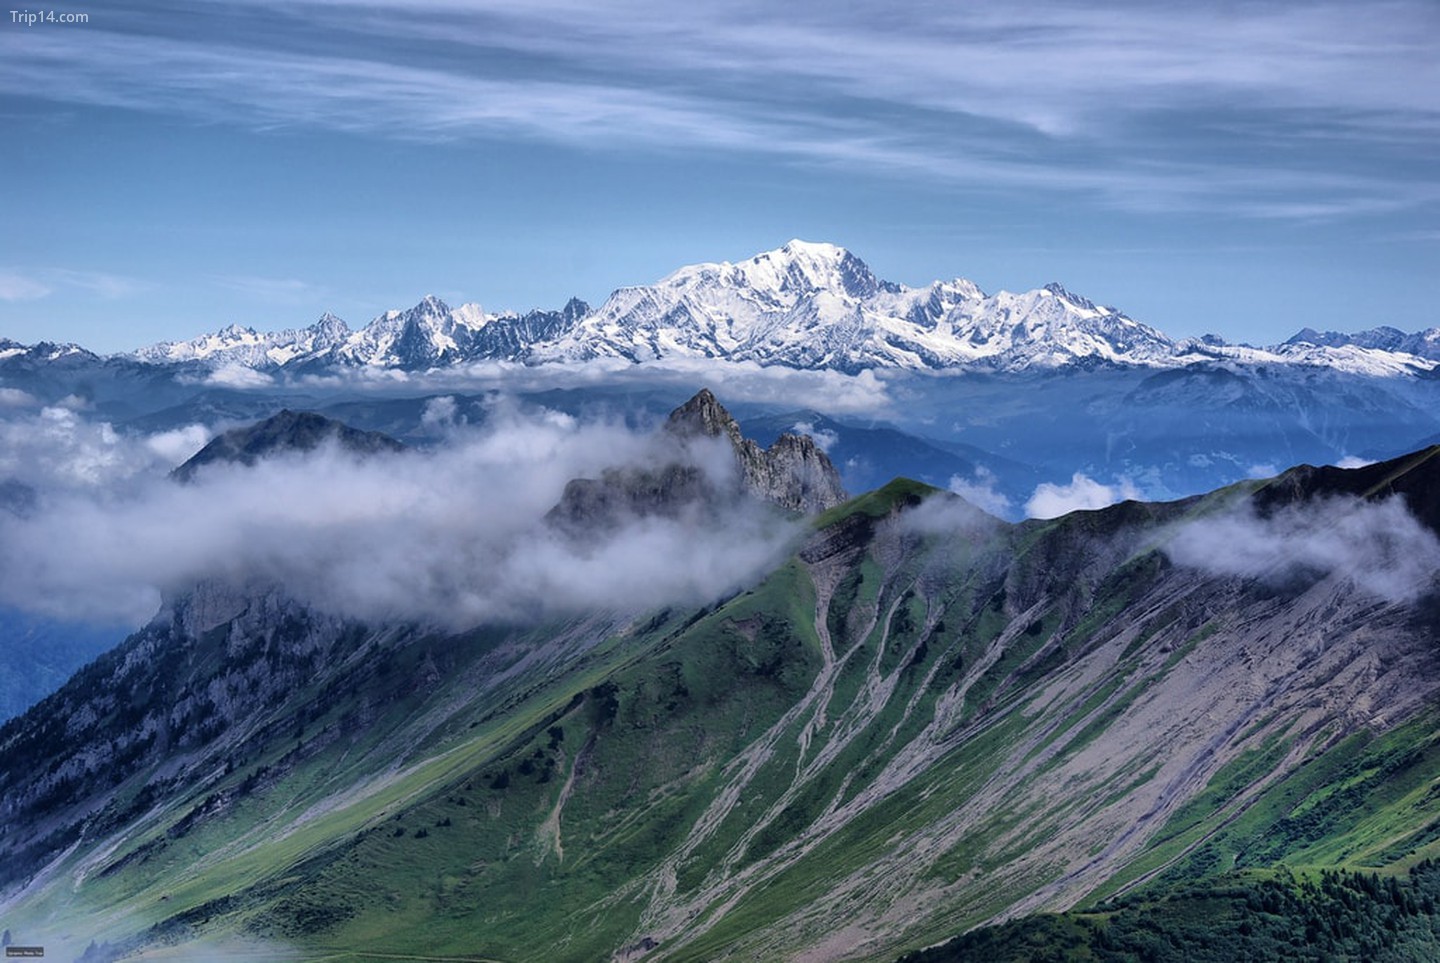  Mont Blanc nhìn từ đỉnh Alps của Pháp   |   